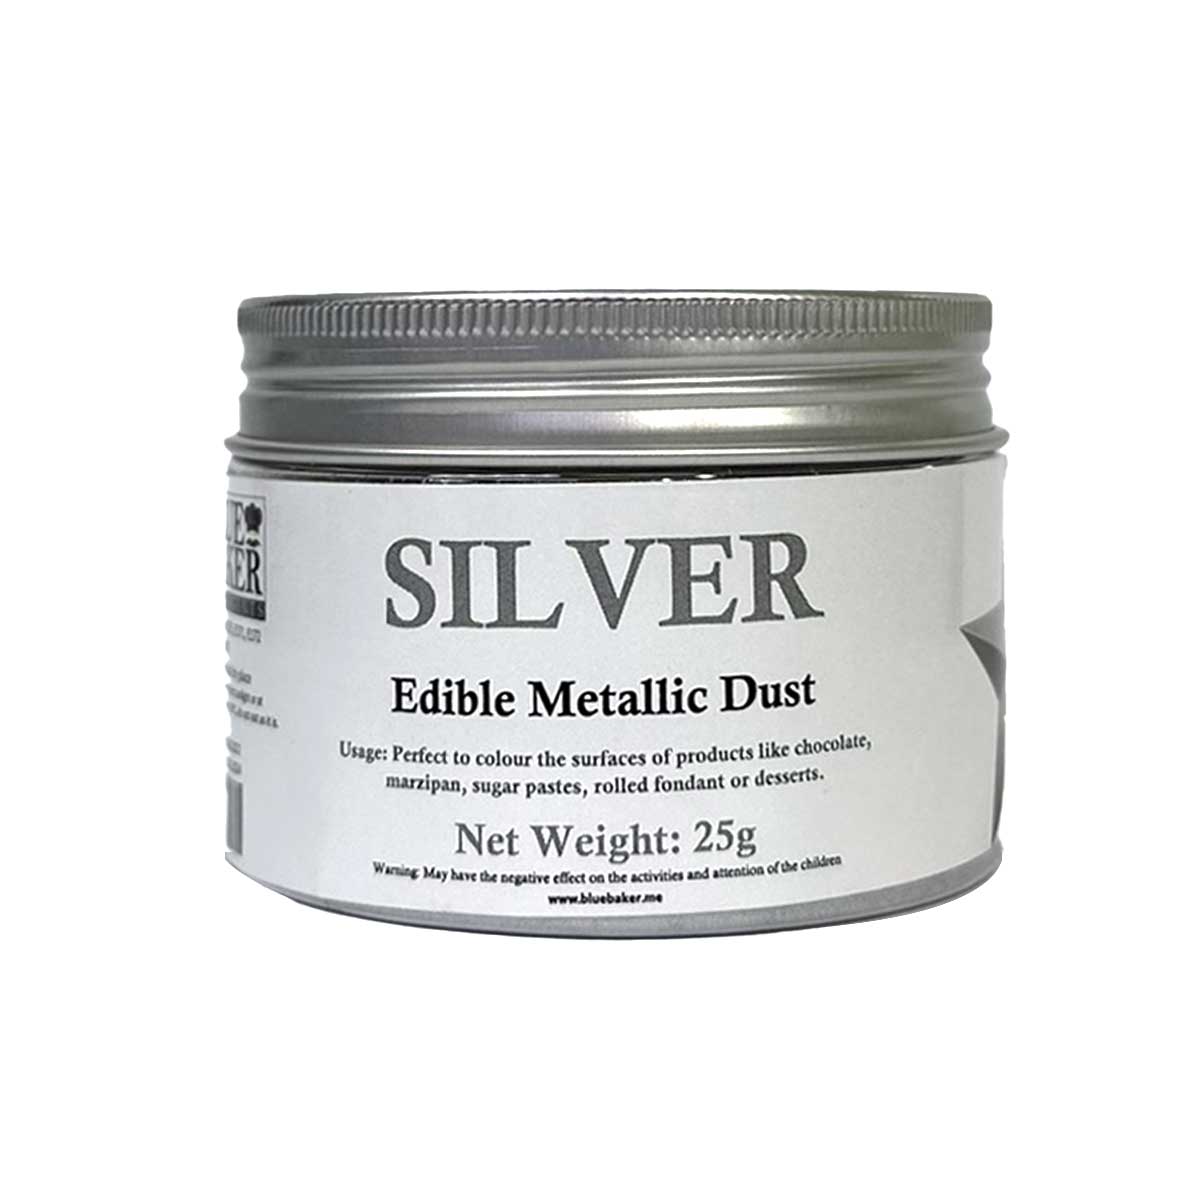 BlueBaker Edible Metallic Dust Silver